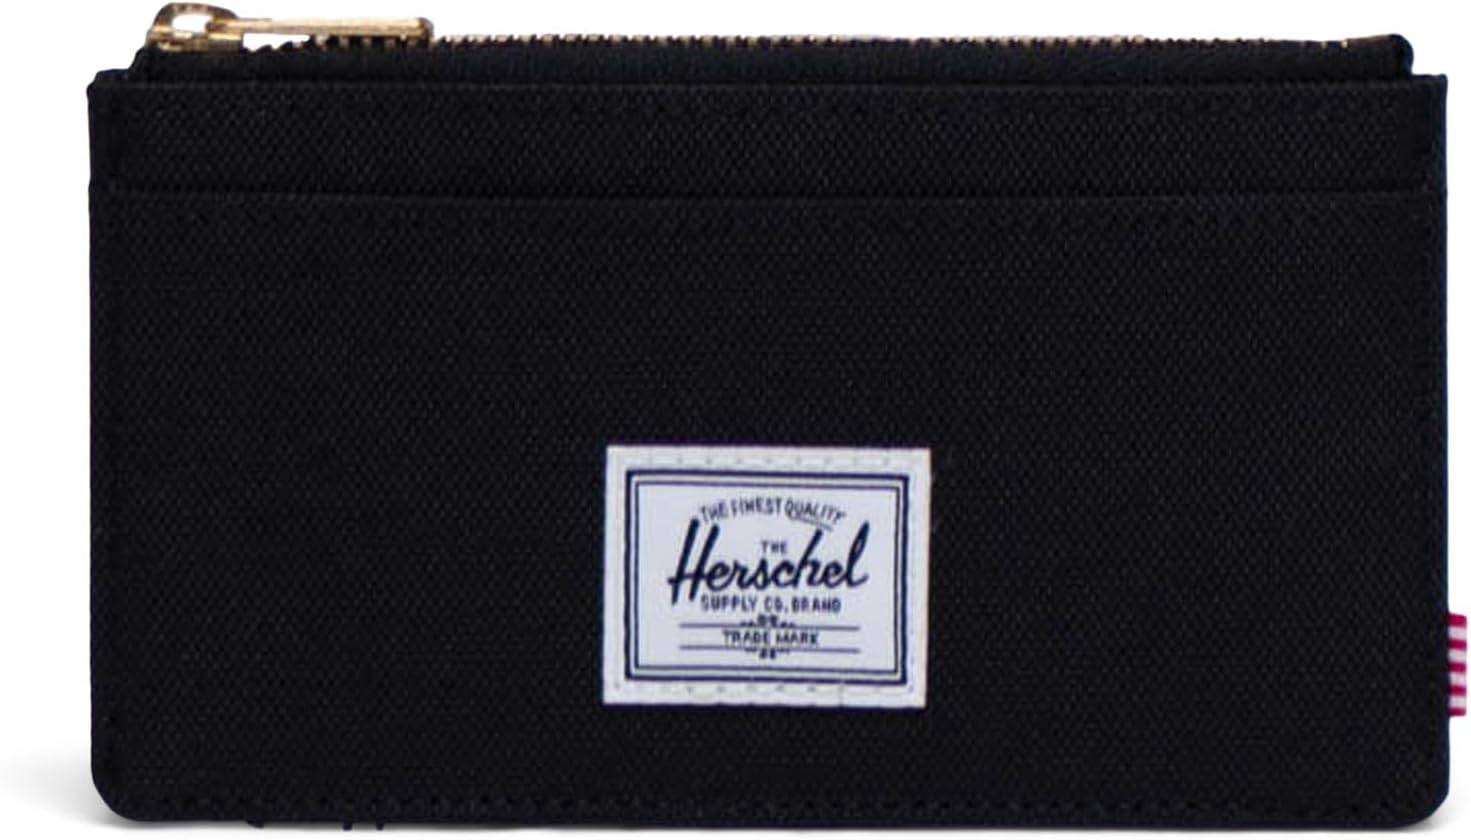 кошелек oscar large cardholder herschel supply co цвет ash rose Кошелек Oscar Large Cardholder Herschel Supply Co., черный